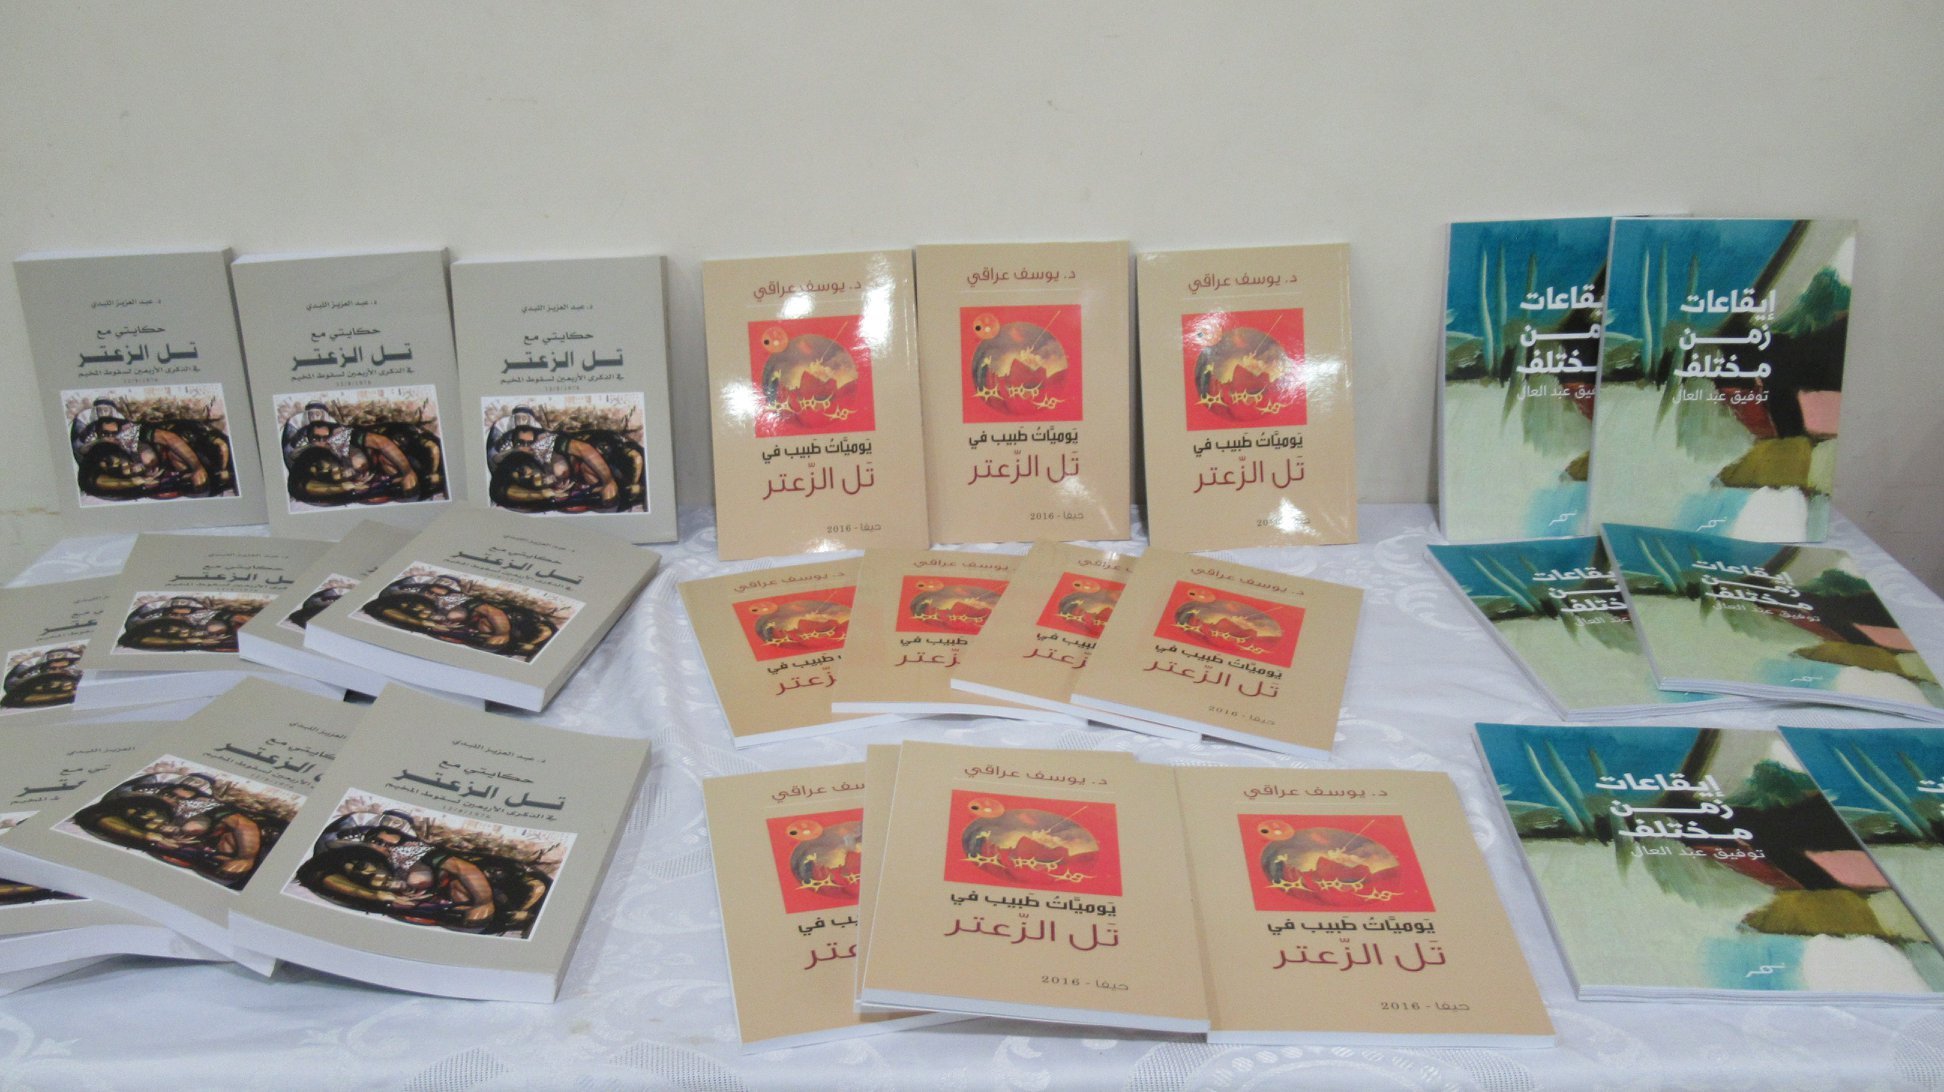  نادي حيفا الثقافي يحيي الذكرى الثانية والأربعين لمجزرة تل الزعتر-3